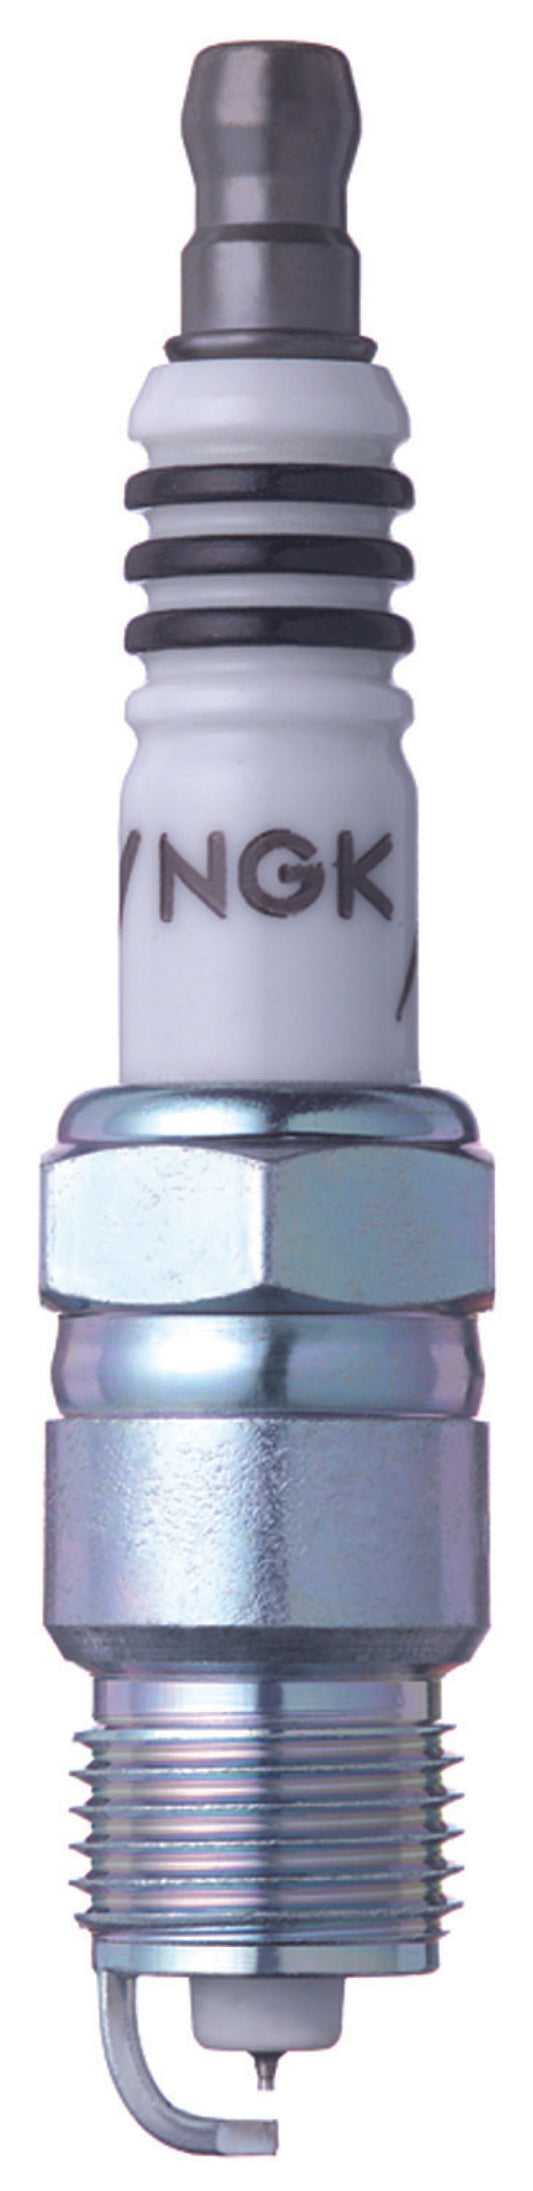 NGK Single Iridium Spark Plug Box of 4 (UR45IX)